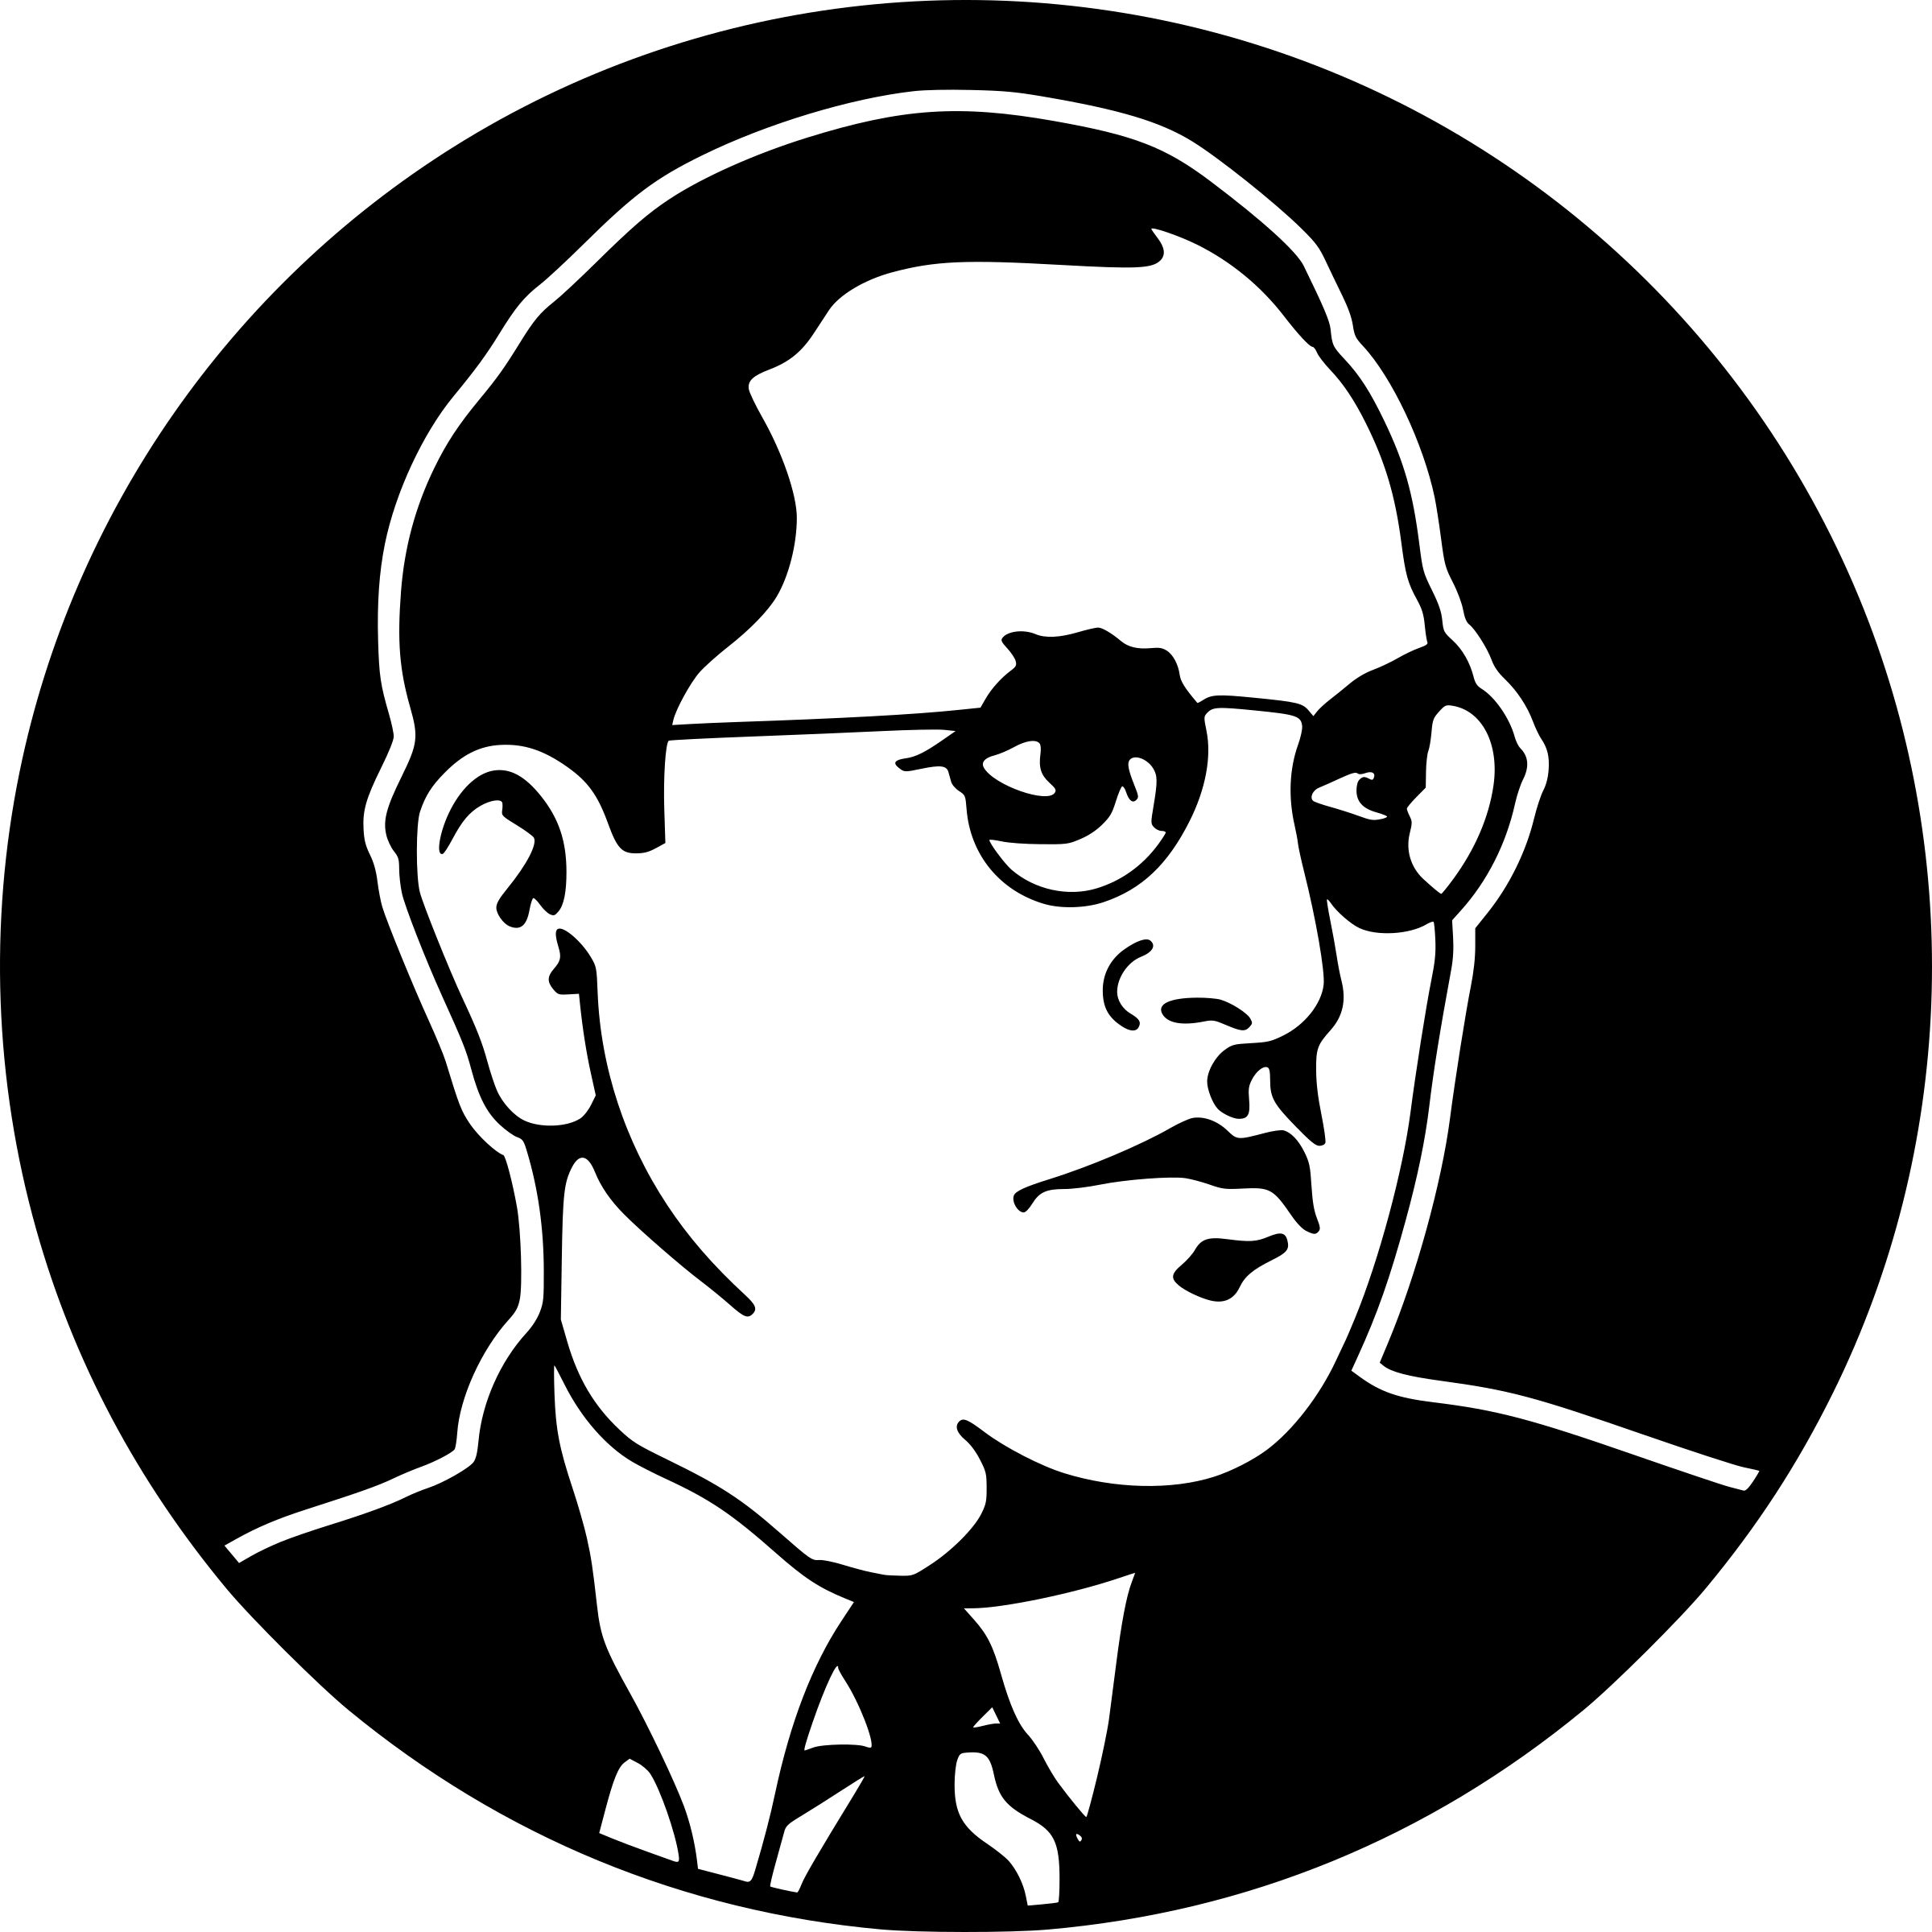 Logo Of Babasaheb Ambedkar University Transparent PNG - 588x1278 - Free  Download on NicePNG